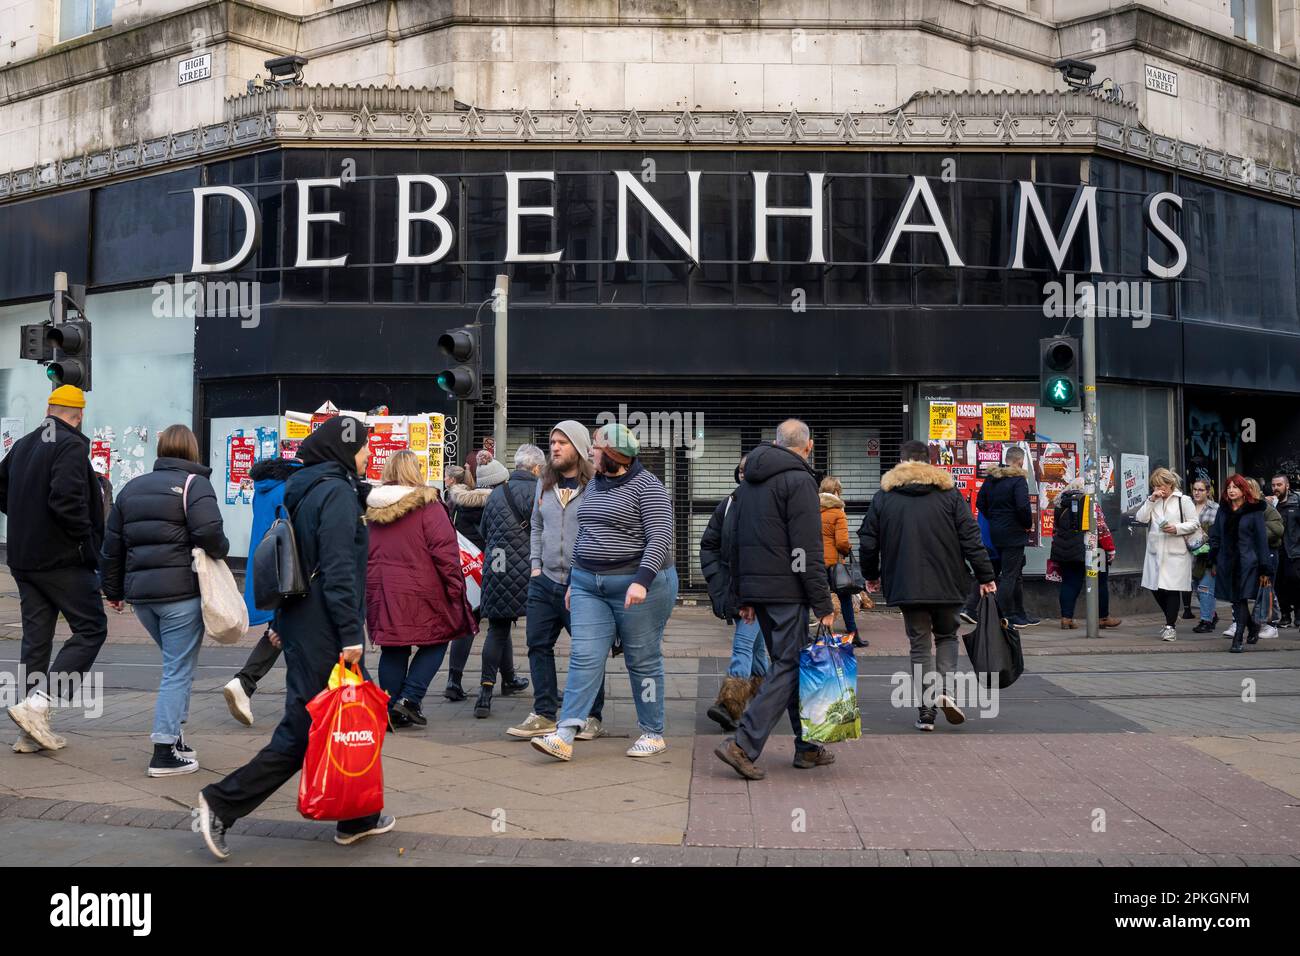 Una visione generale di un negozio chiuso Debenhams a Manchester, Inghilterra, Regno Unito. Foto Stock